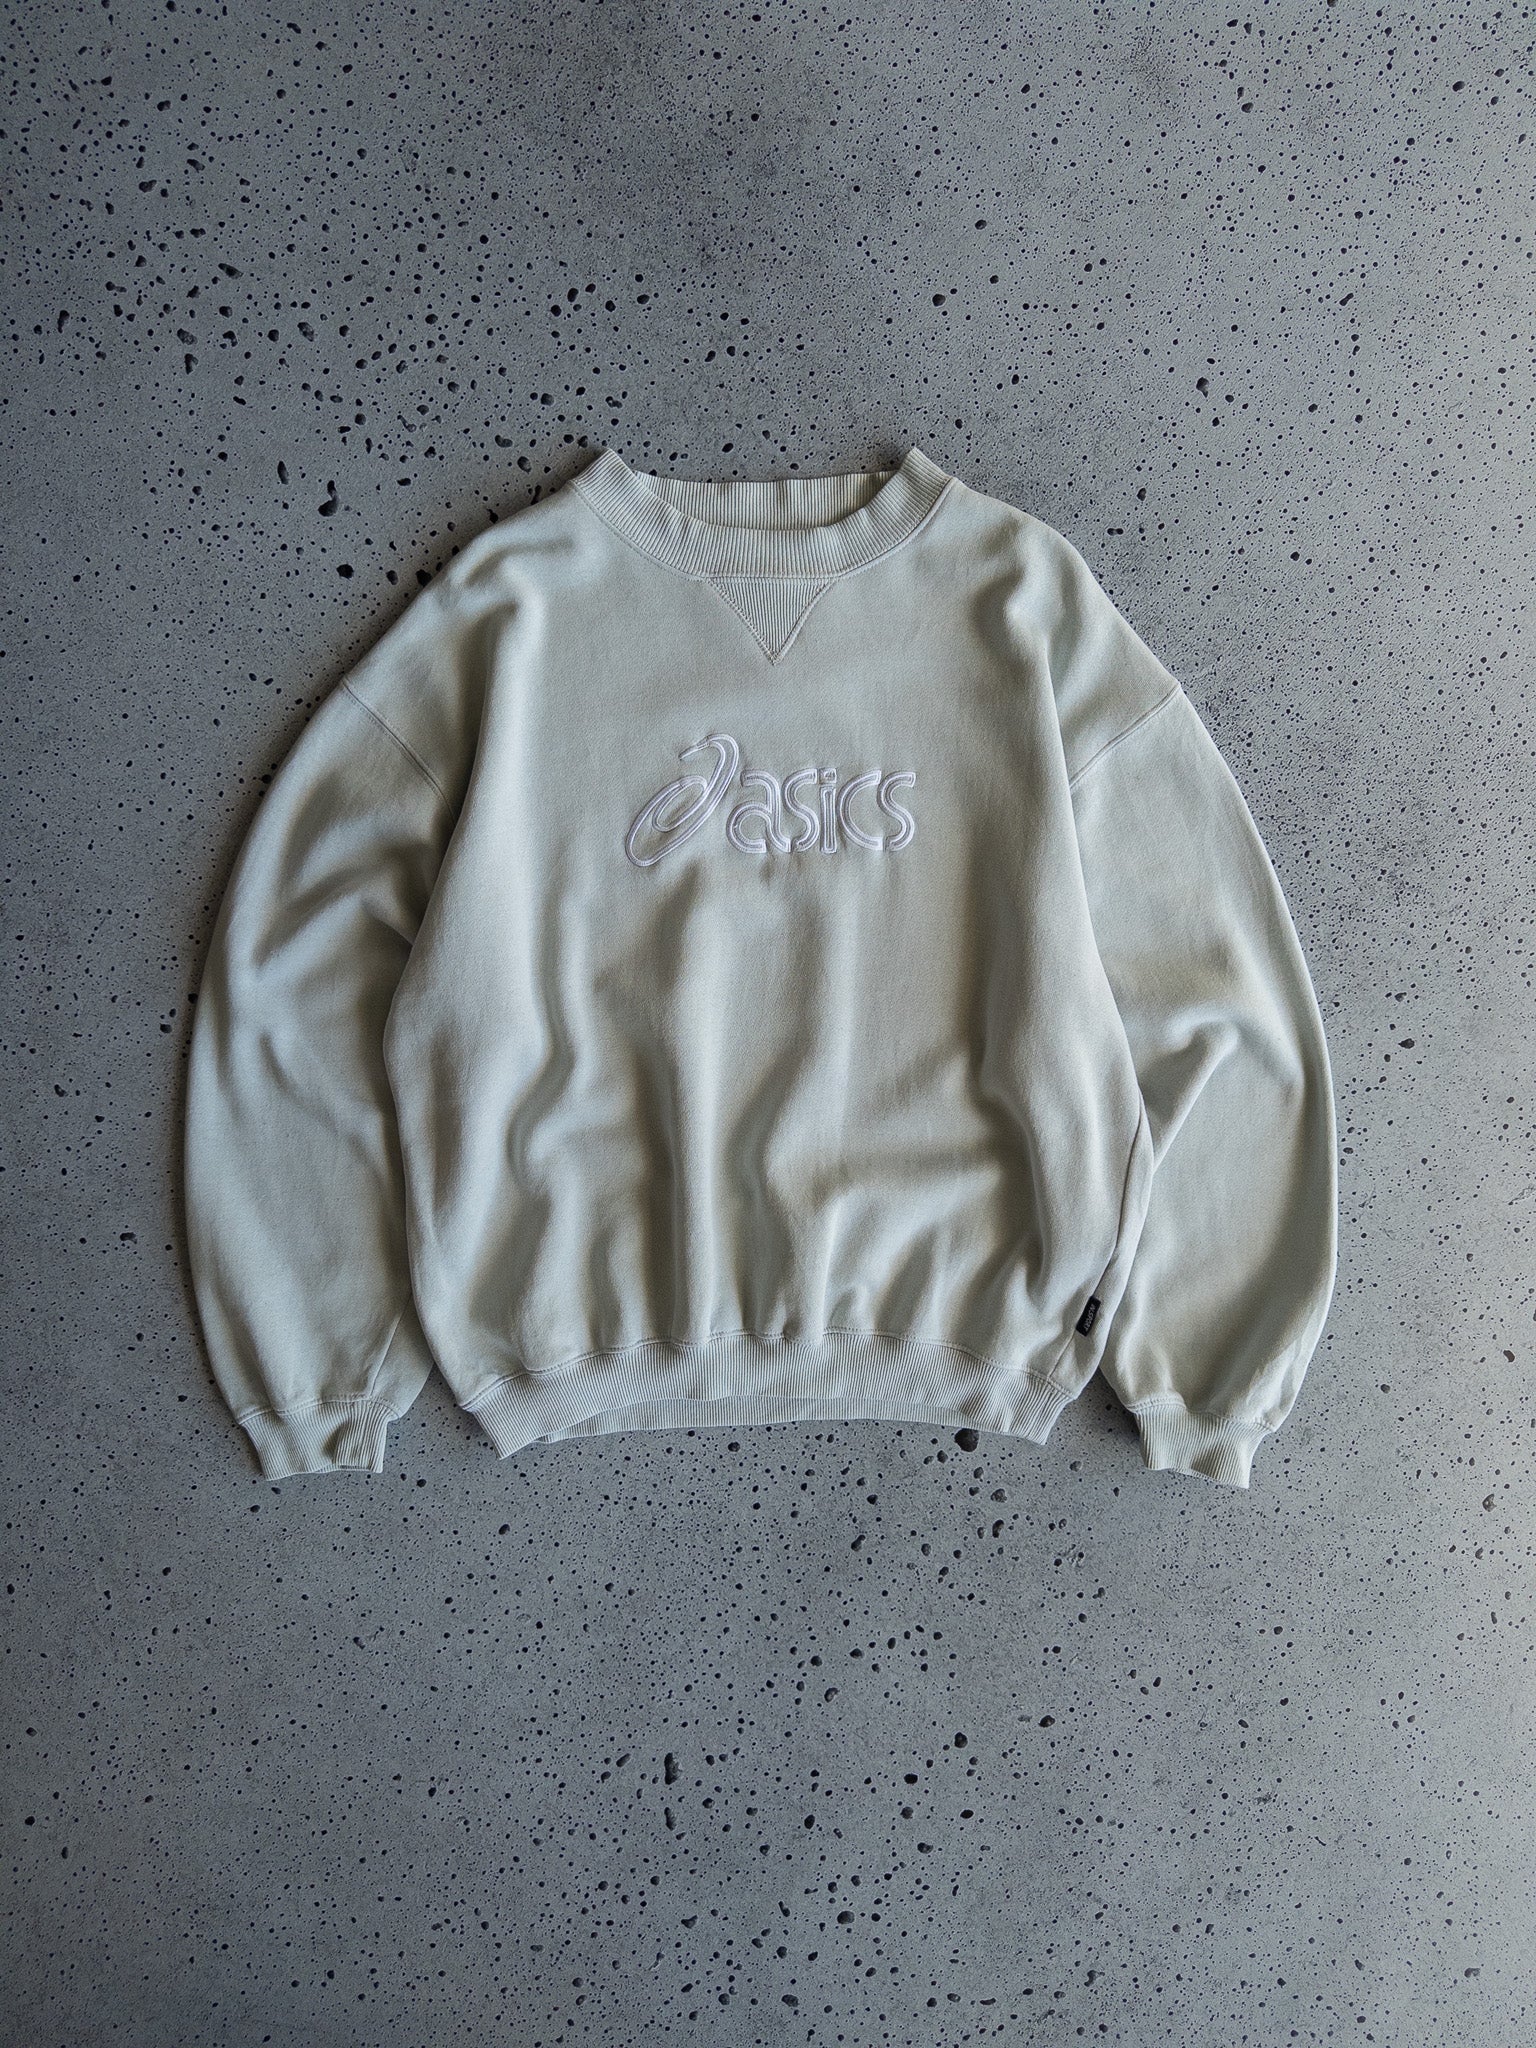 Vintage Asics Sweatshirt (L)